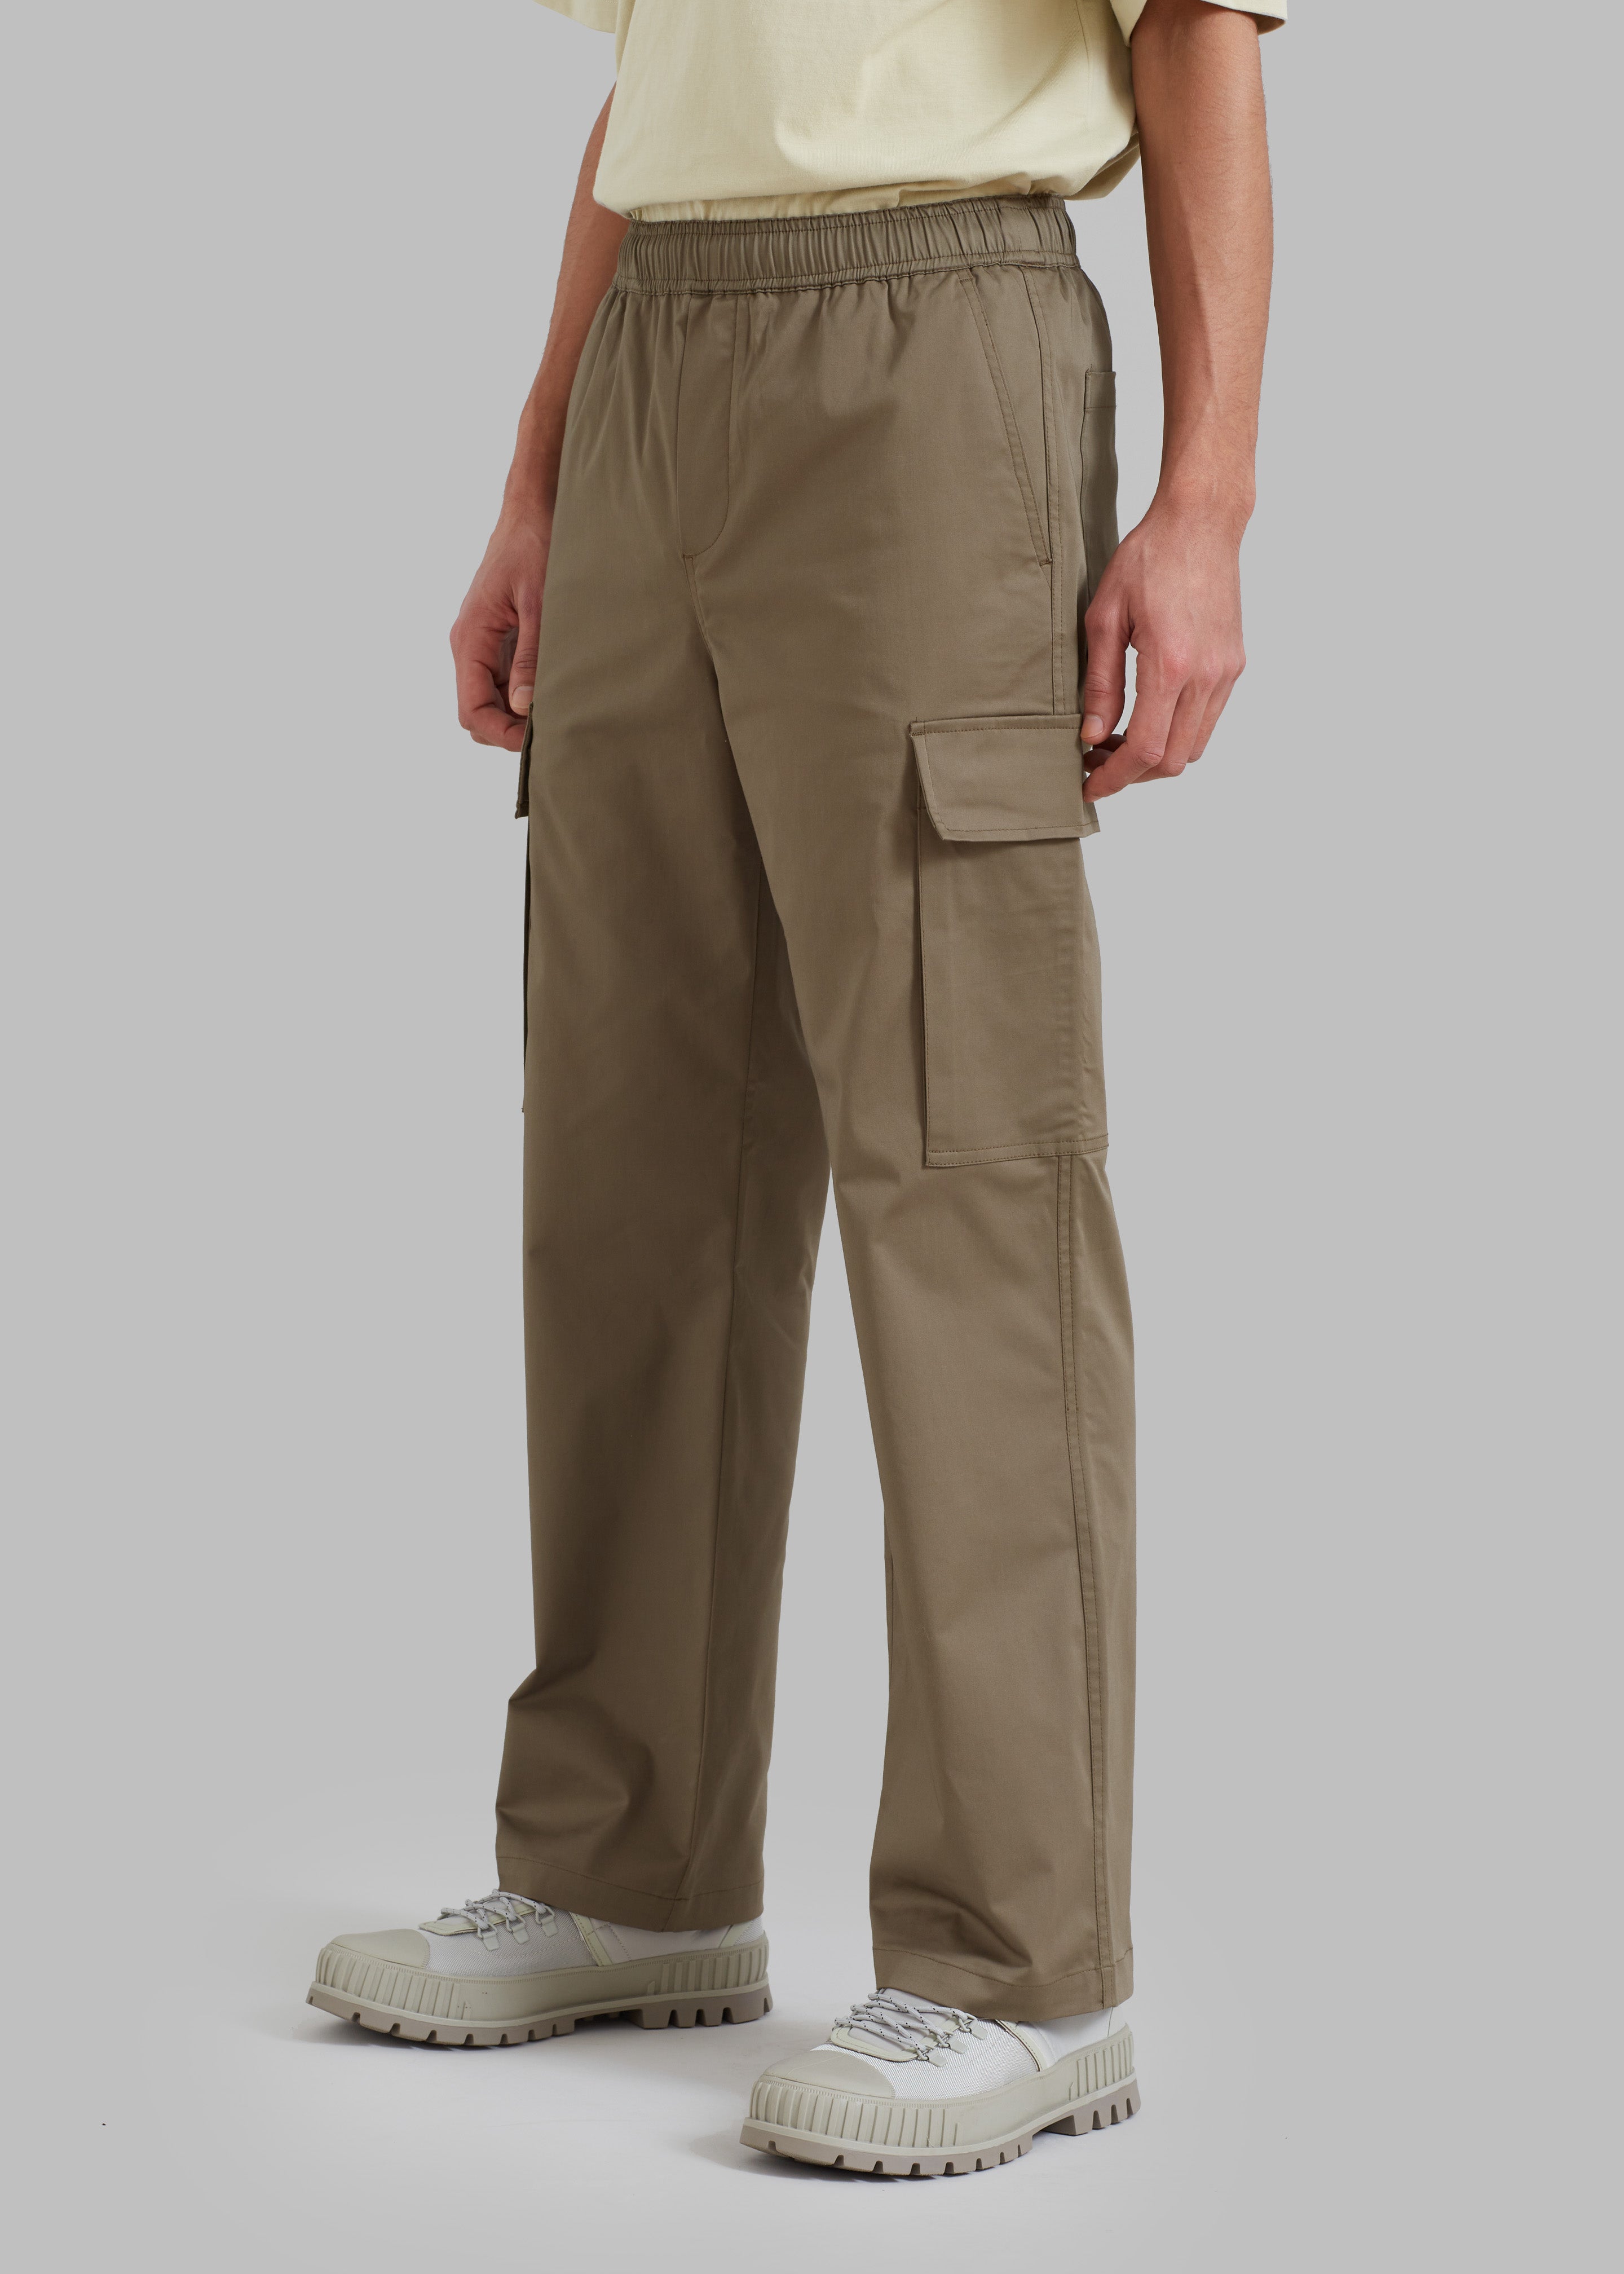 Brown Woven Cargo pants for men in Pakistan